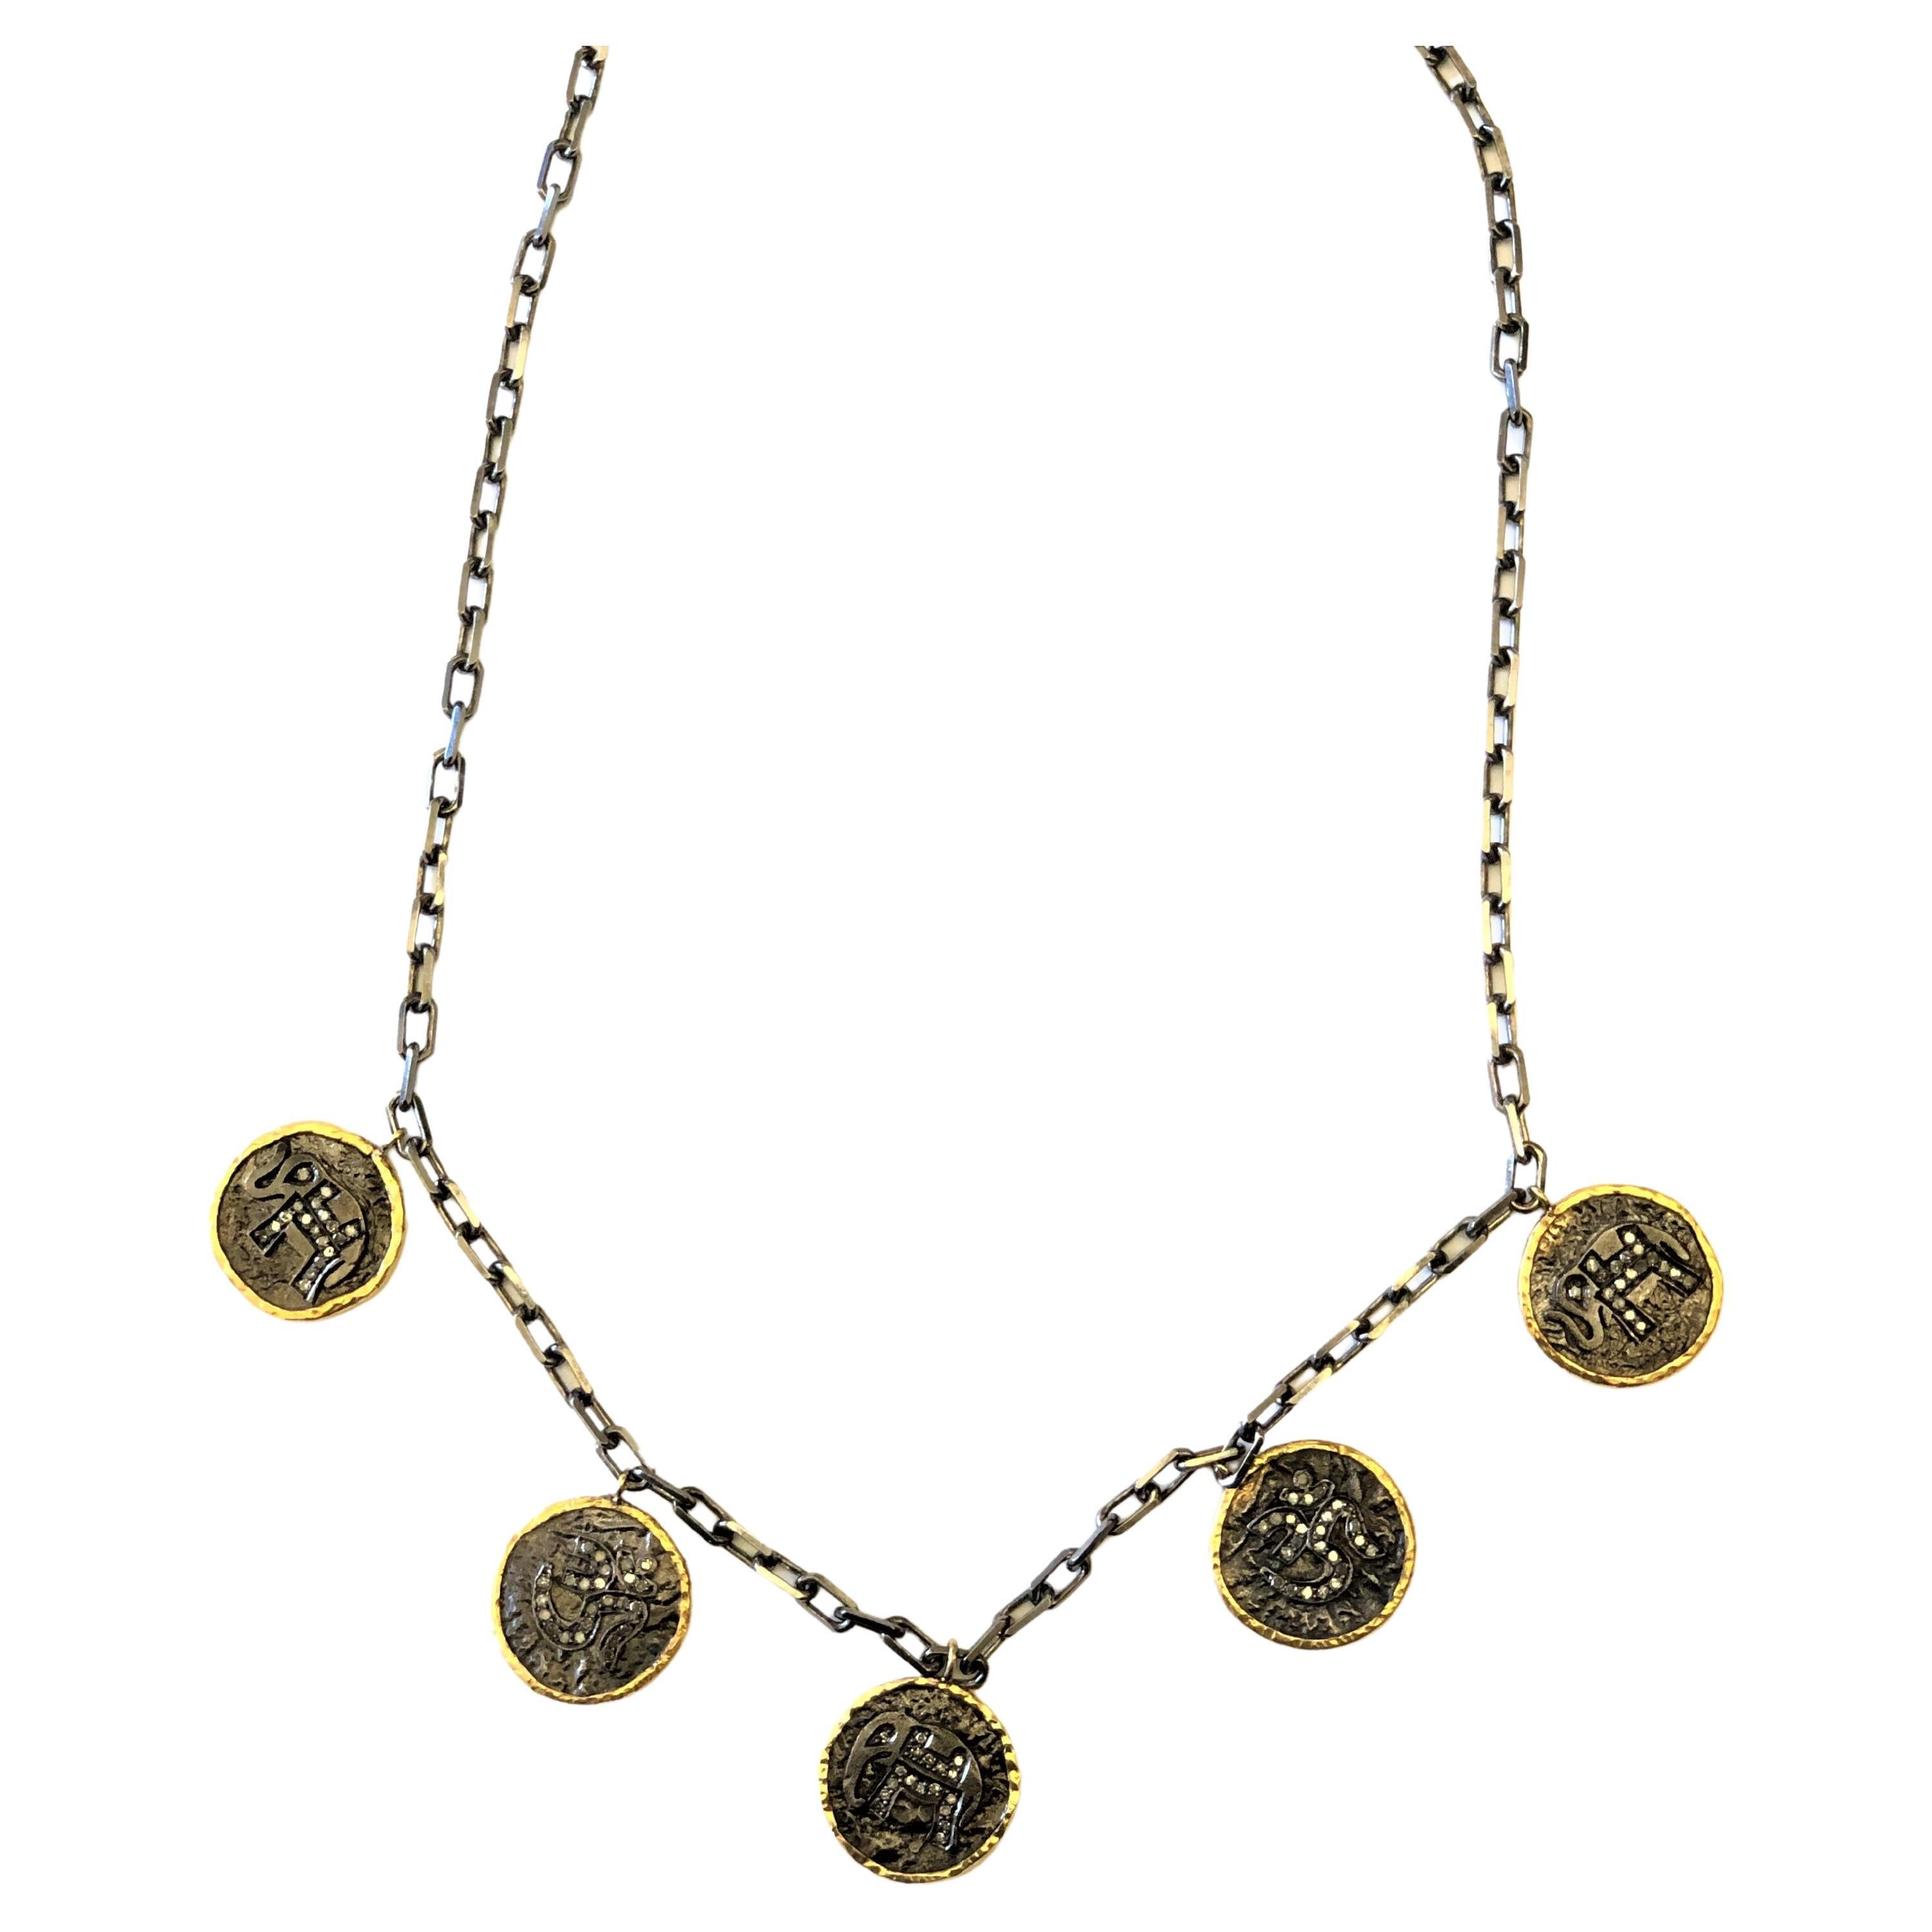 Vieux collier de pièces de monnaie sculptées avec diamants en or et argent, motif éléphant et om